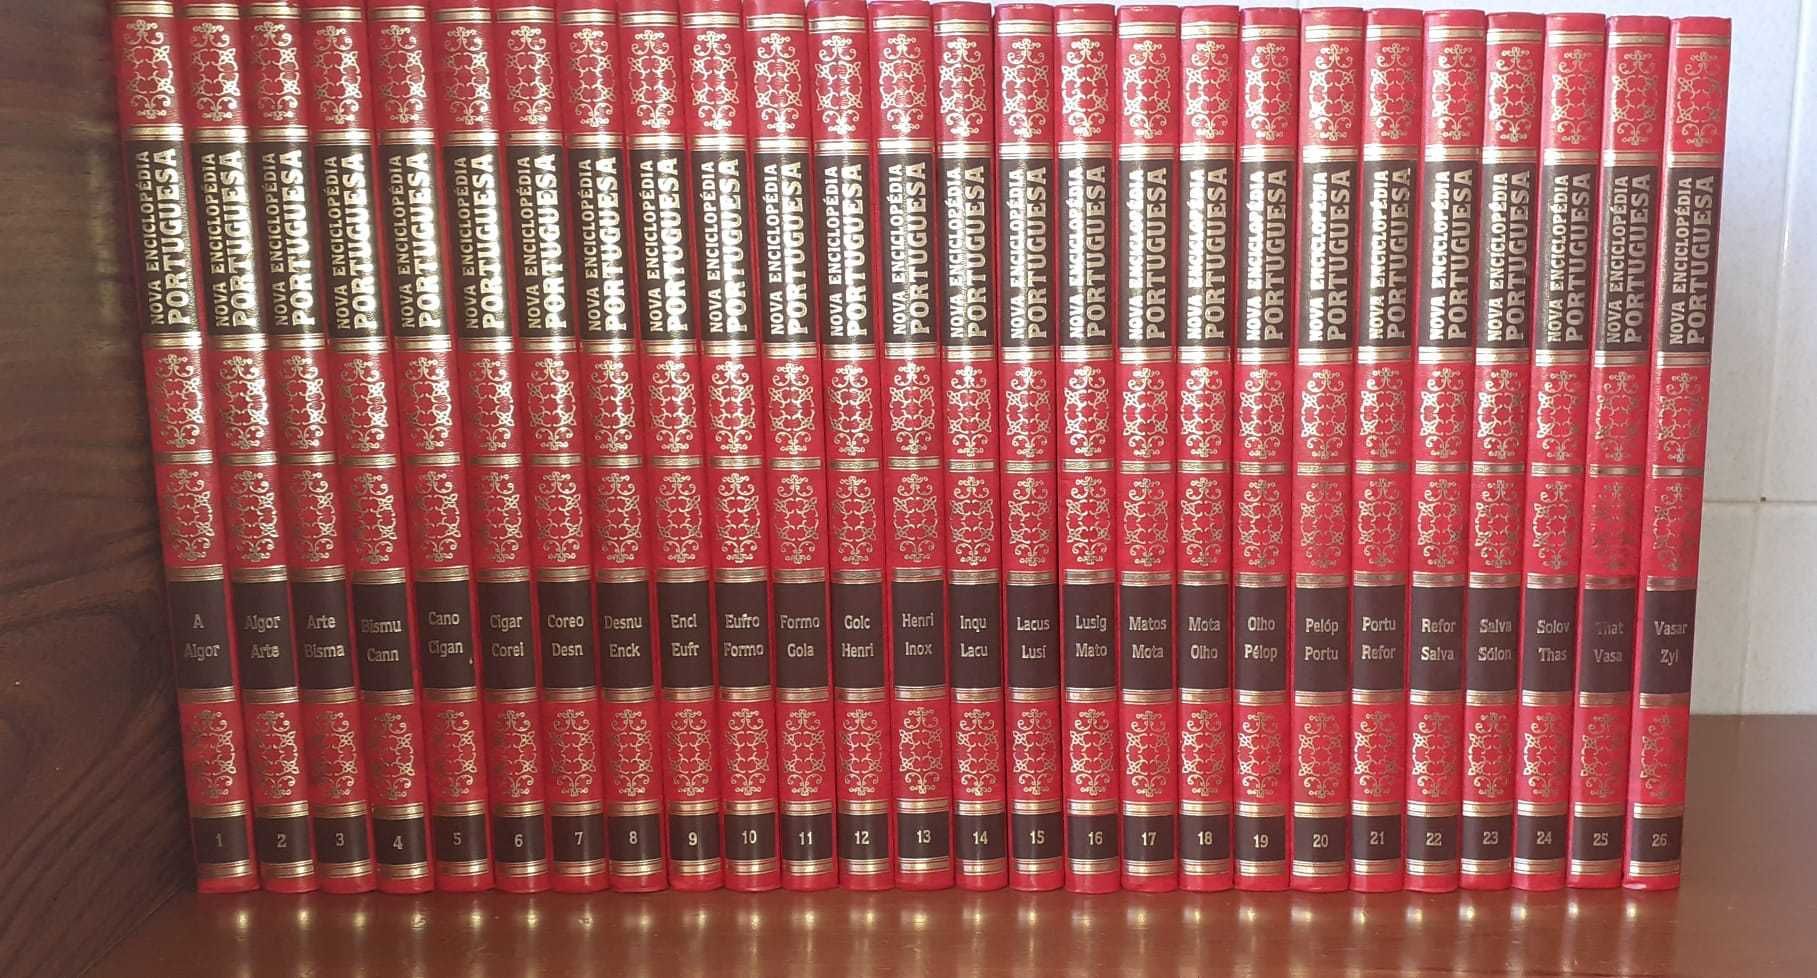 Enciclopédia Portuguesa 26 volumes